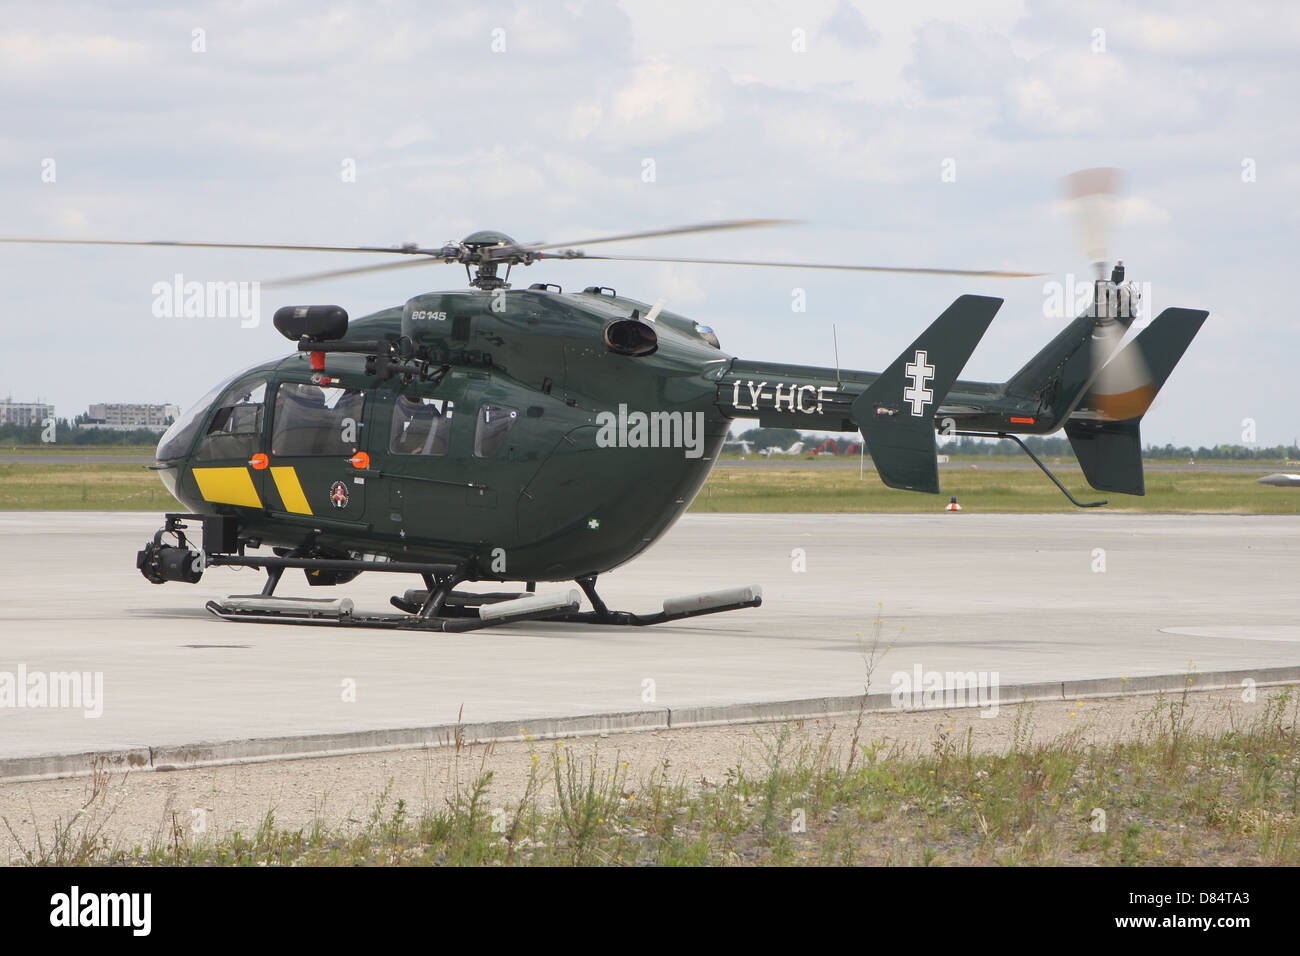 Un Eurocopter EC145, un helicóptero de la Guardia Fronteriza del Estado Lituano, servicio, el aeropuerto de Schoenefeld, Alemania. Foto de stock